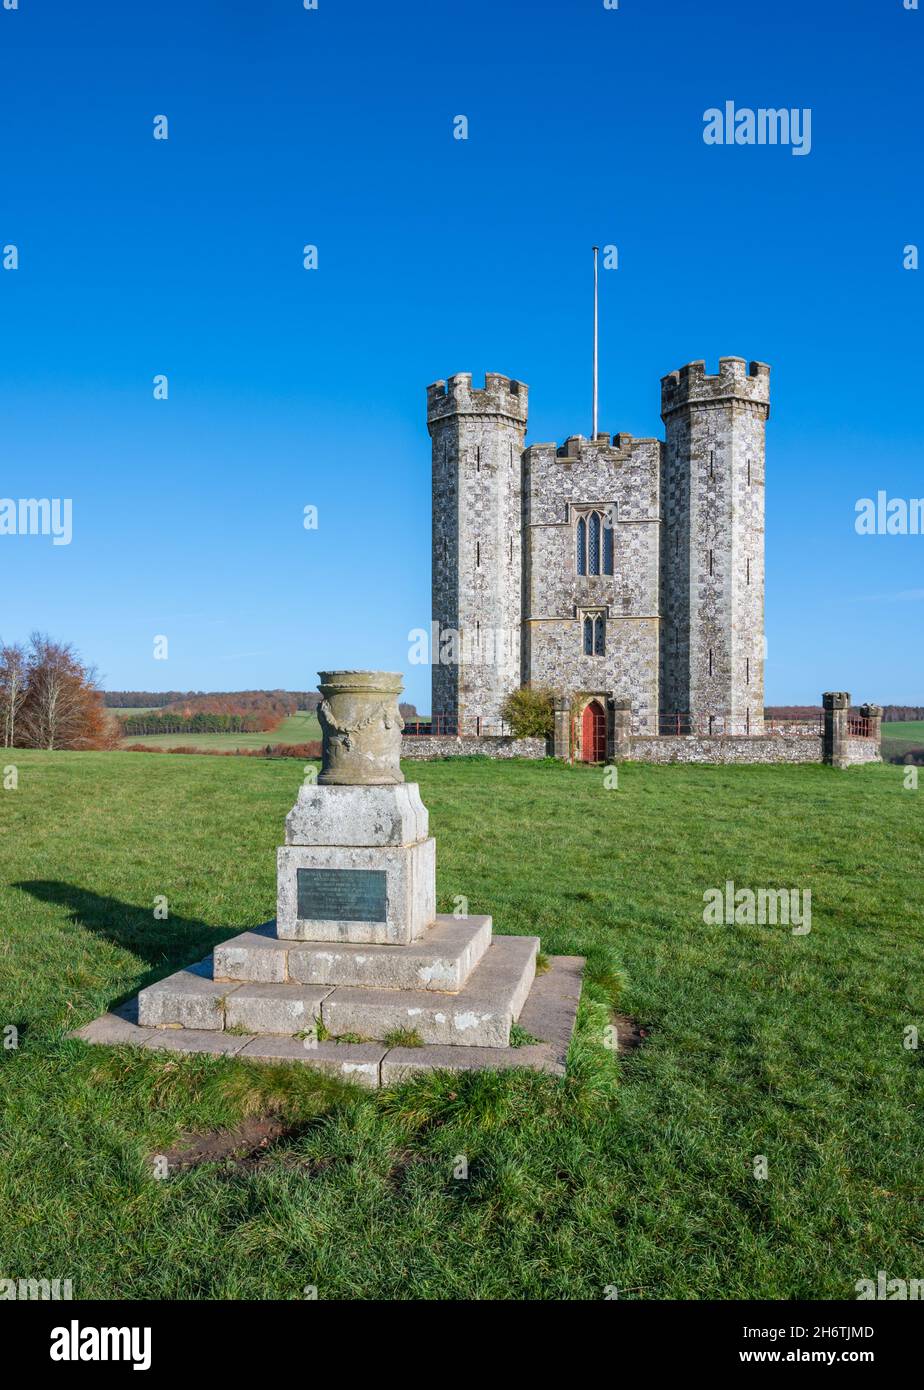 Monument au siège de 1855 présenté par l'amiral Lord Lyons à Henry Granville, duc de Norfolk, et Hiorne Tower (folie) dans Arundel Park, West Sussex, Royaume-Uni. Banque D'Images